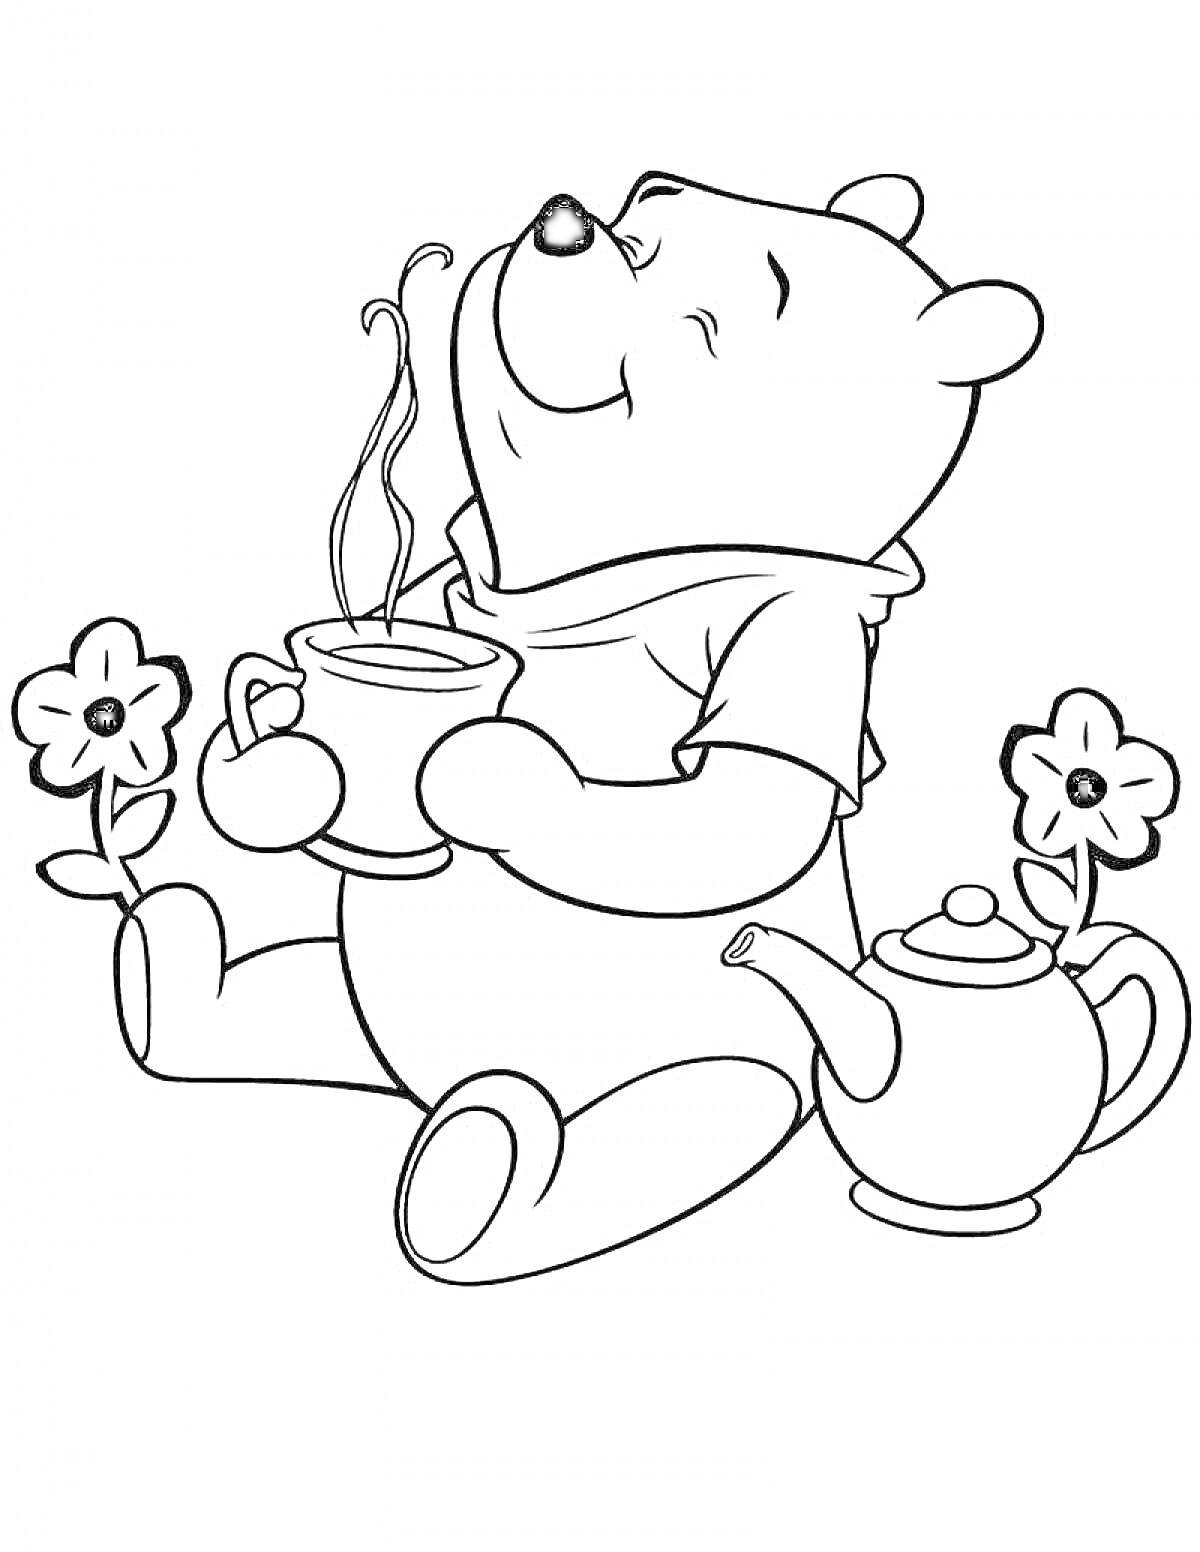 Раскраска Мишка с чашкой чая и чайником, цветы на заднем плане